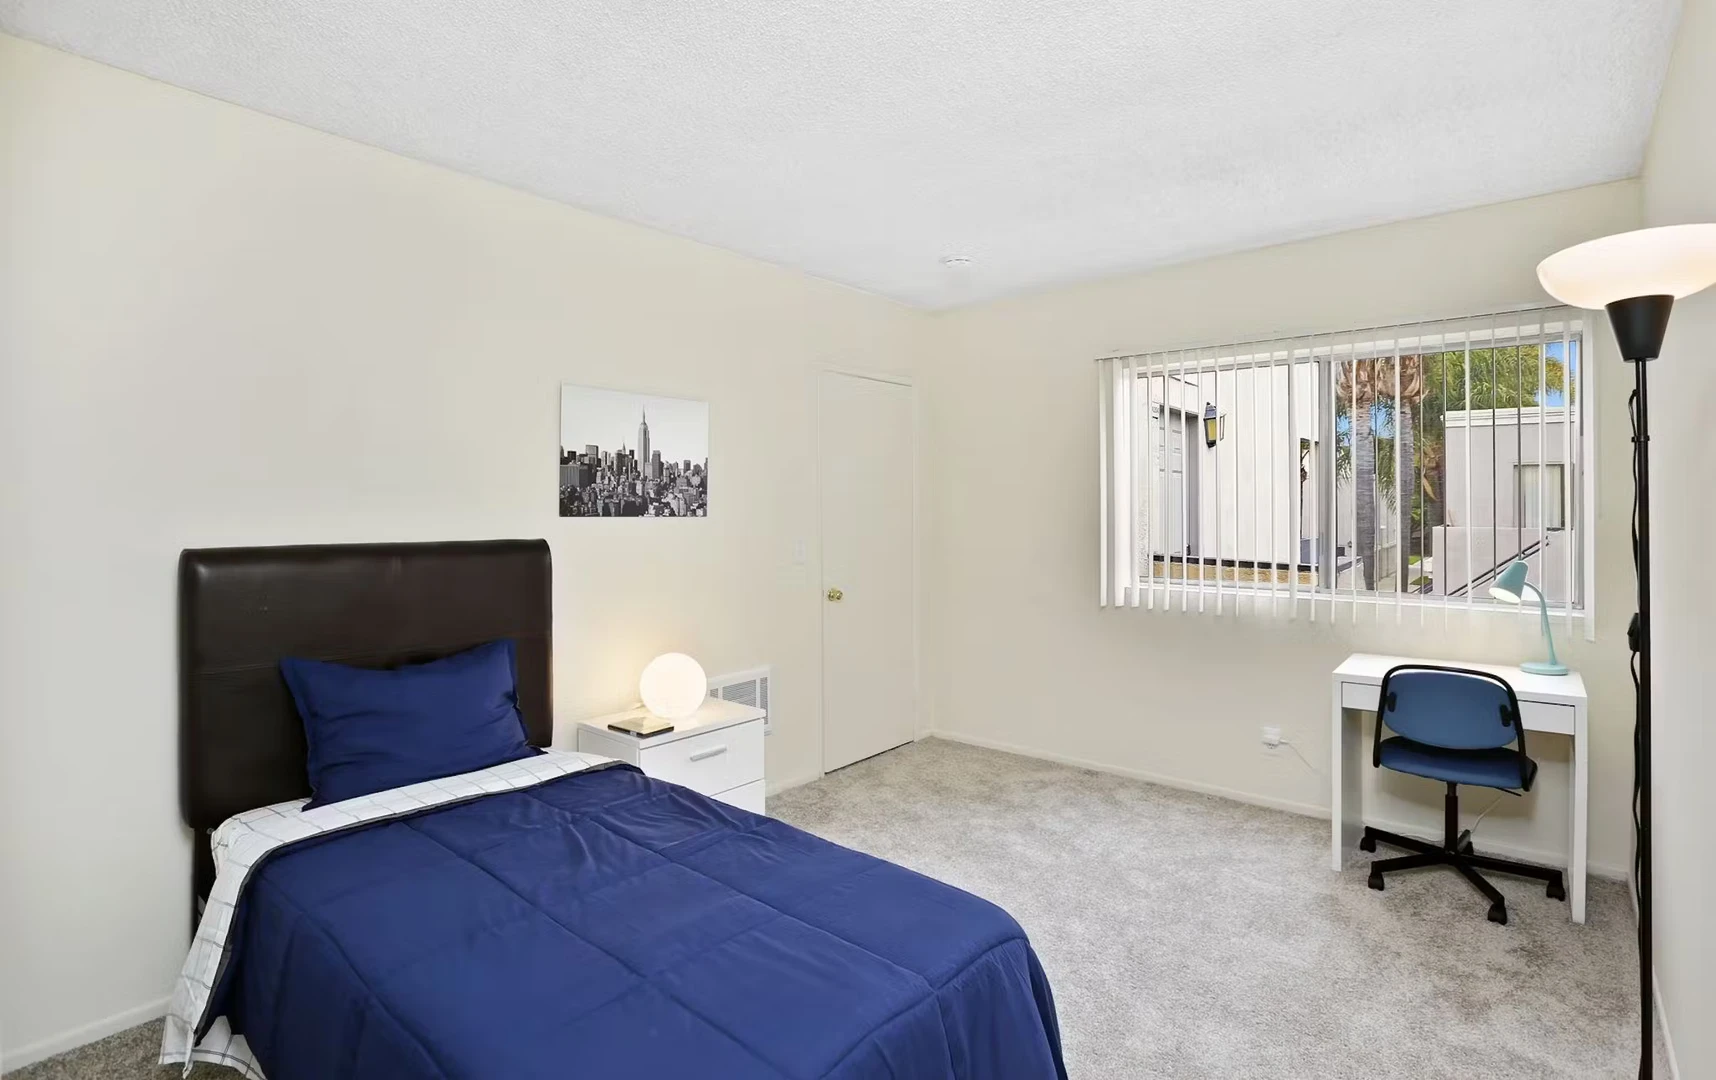 Stanza in condivisione in un appartamento di 3 camere da letto Los Angeles